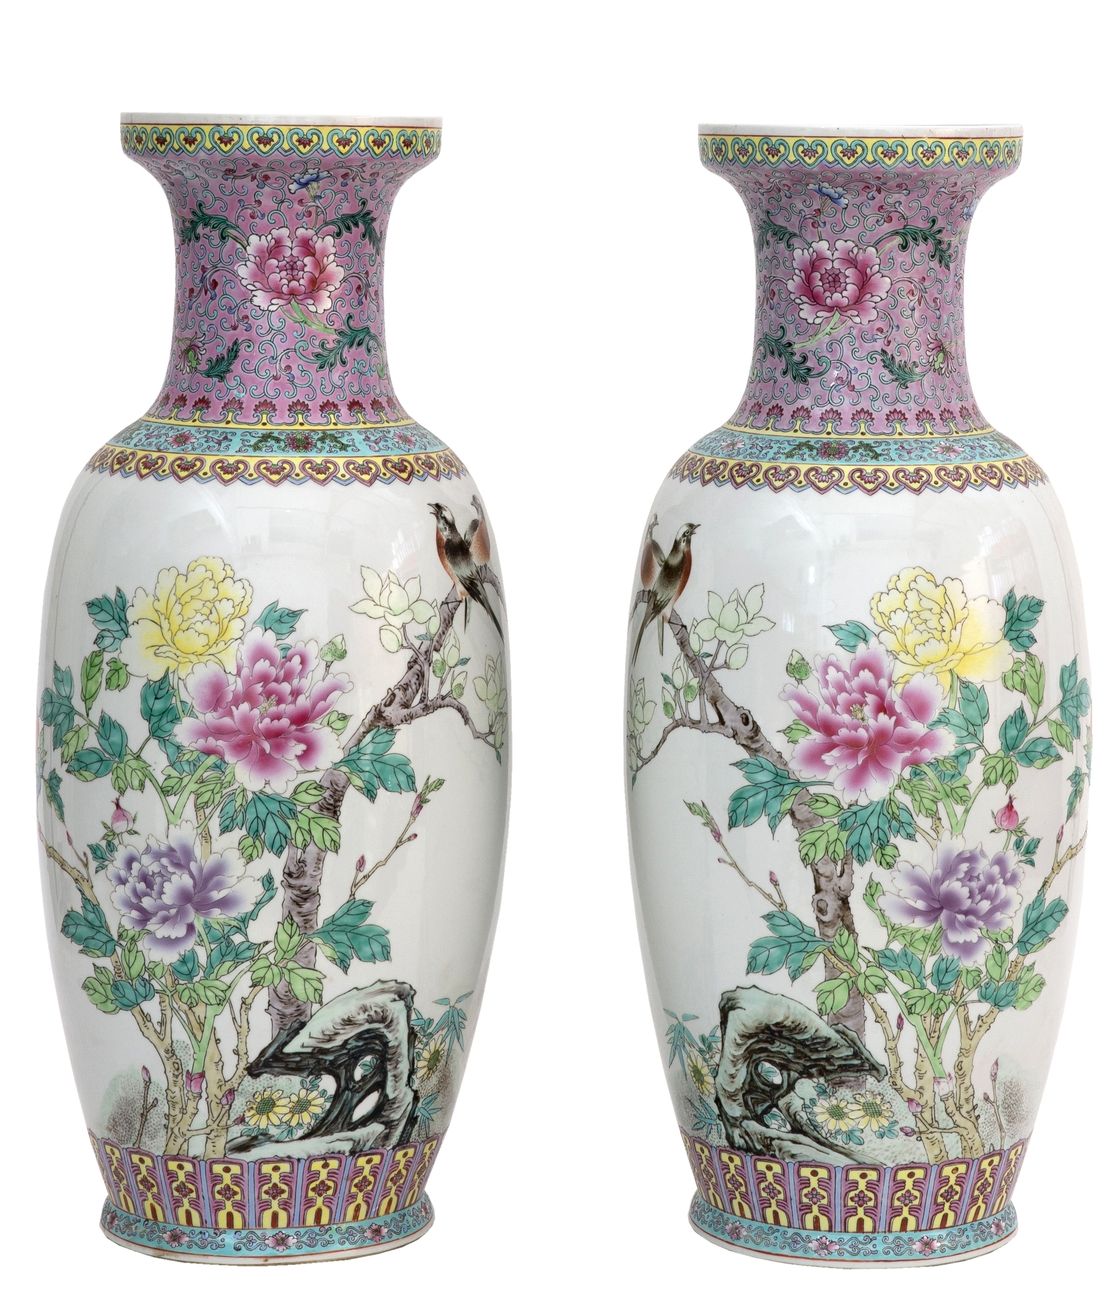 Null China, 20. Jahrhundert
Ein Paar Porzellanvasen mit einem Dekor aus rosafarb&hellip;